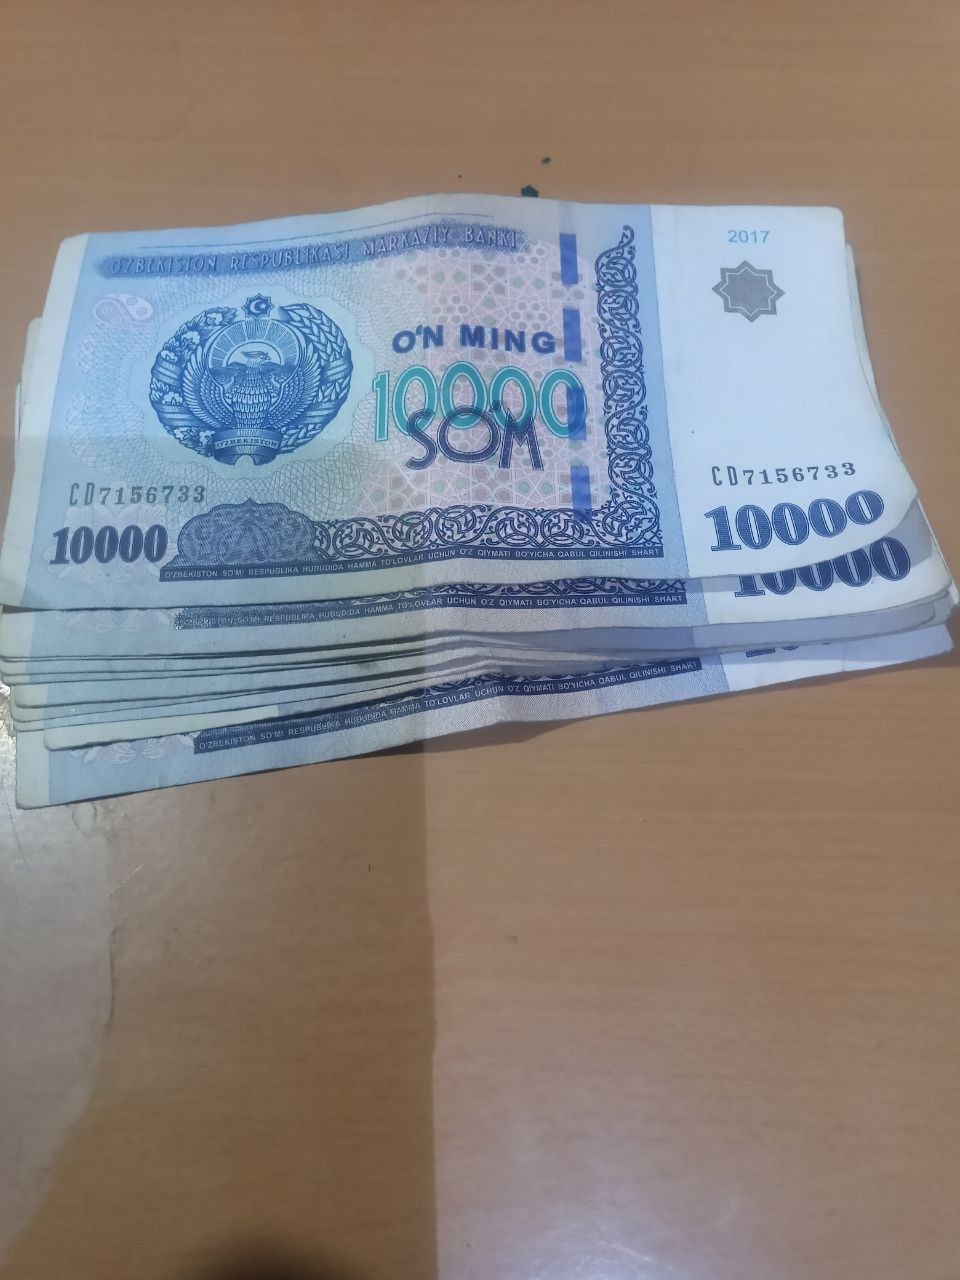 7000000 сум. 100 000 Сум. 61 000 Сум. 3d пачка узбекских сумов. 1 150 000 Сум в рублях.